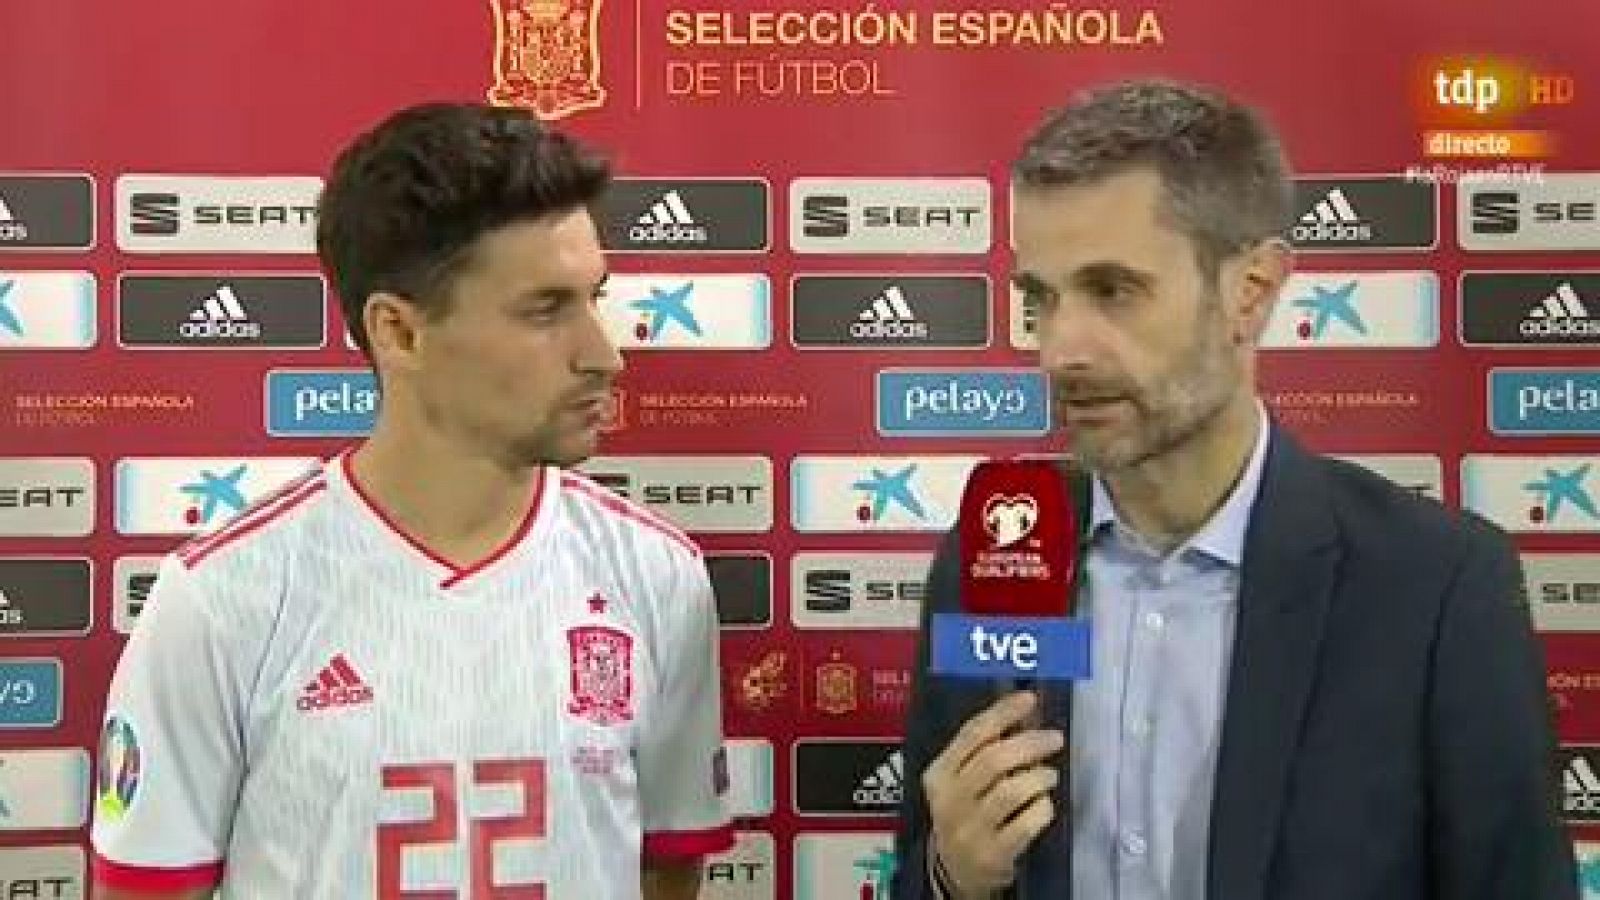 Clasificación Eurocopa - Navas: "Le doy las gracias al míster por la confianza" - RTVE.es